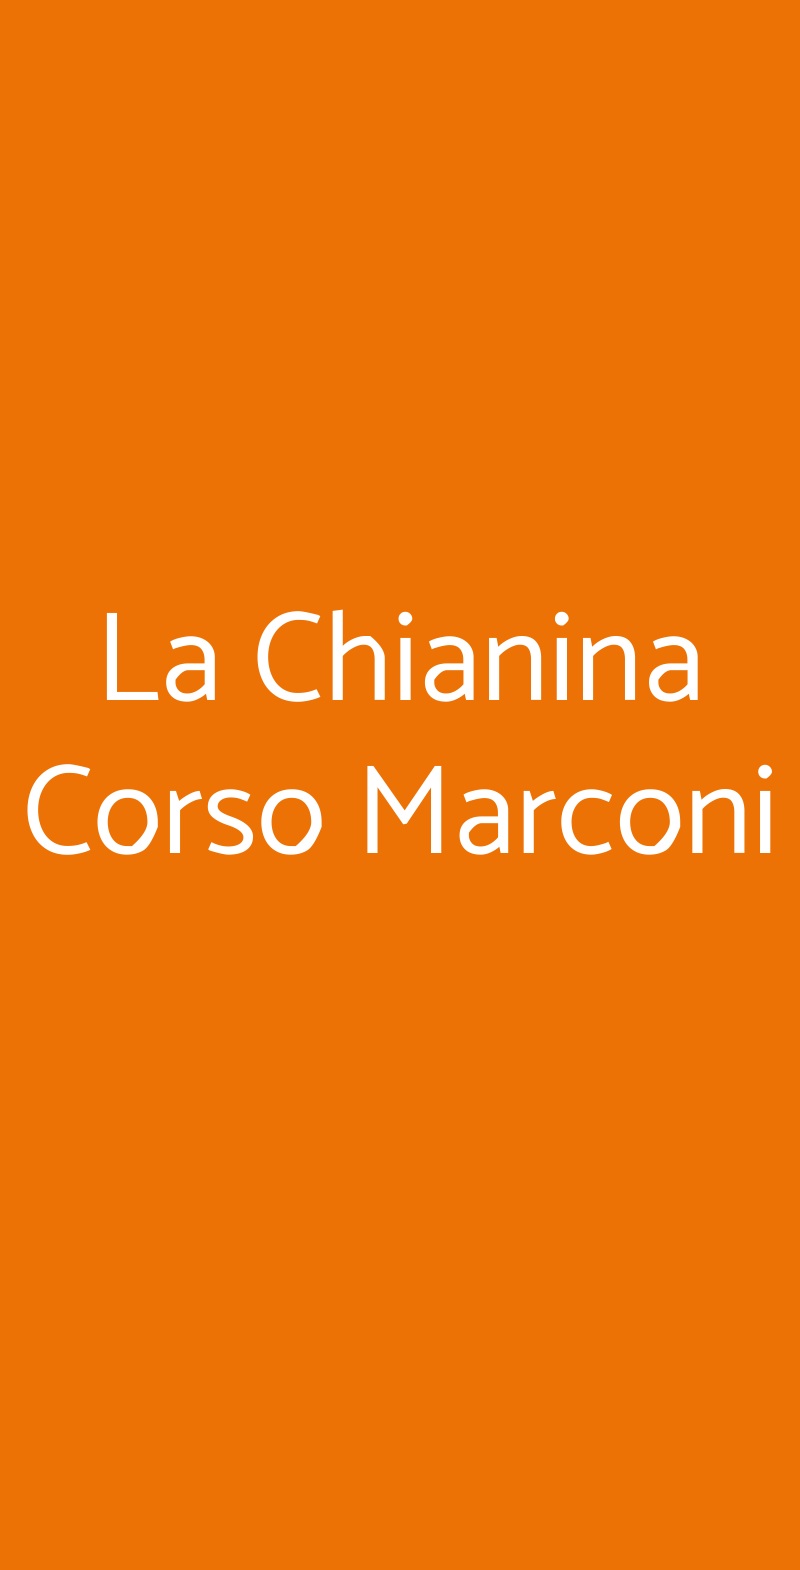 La Chianina Corso Marconi Genova menù 1 pagina